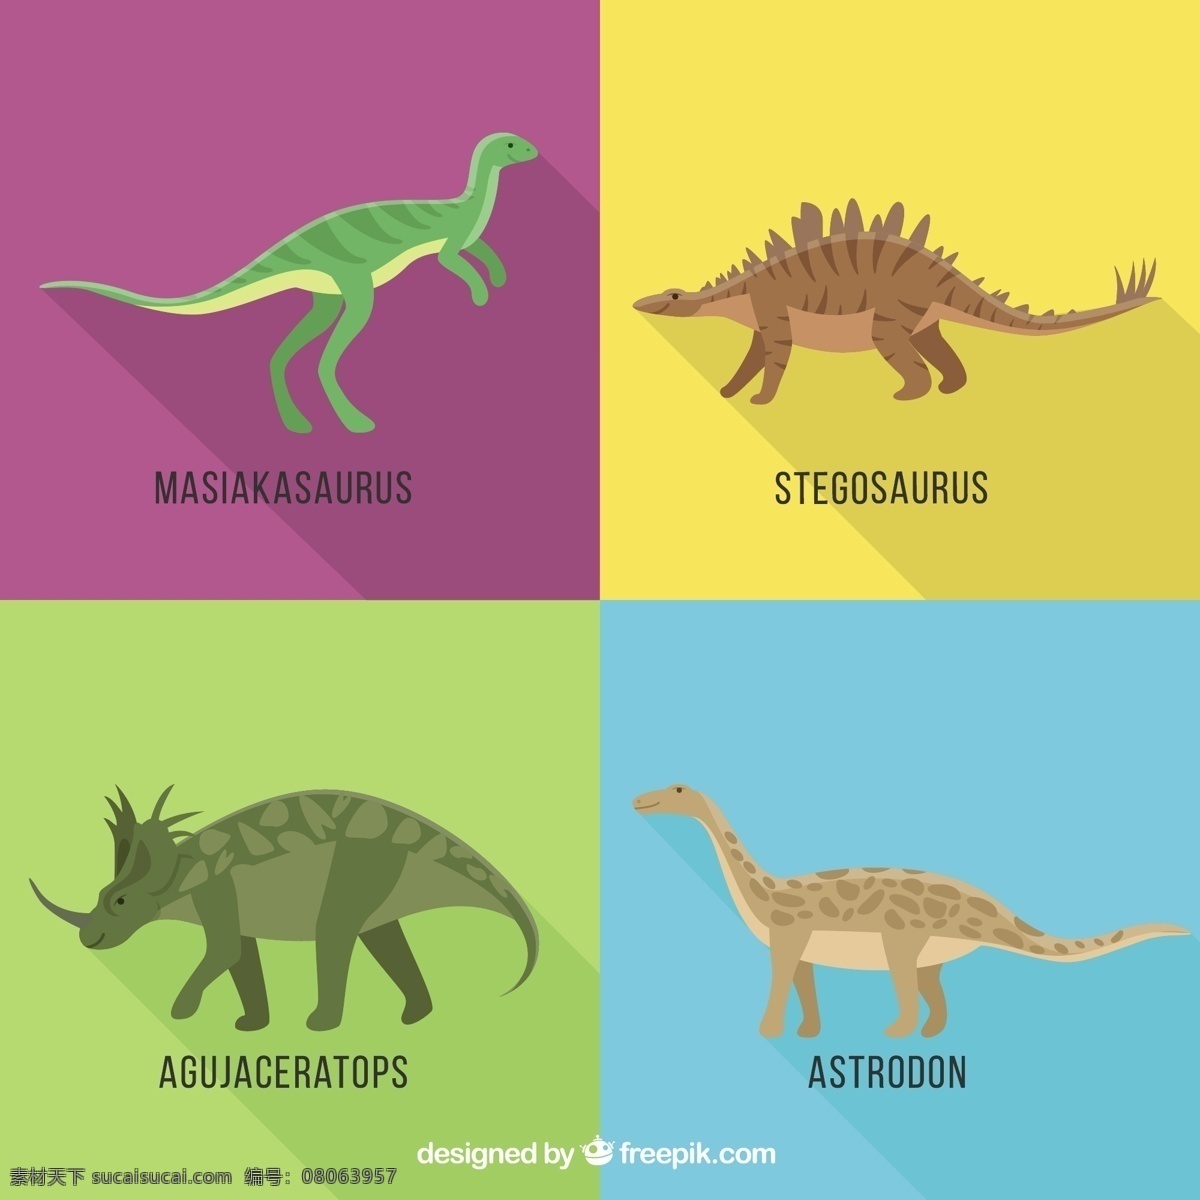 凶猛的恐龙 自然 动物 怪物 恐龙 野生蜥蜴 野生动物 大型恐龙 爬行动物 史前 捕食者 侏罗纪 激烈 雷克斯 物种 黄色